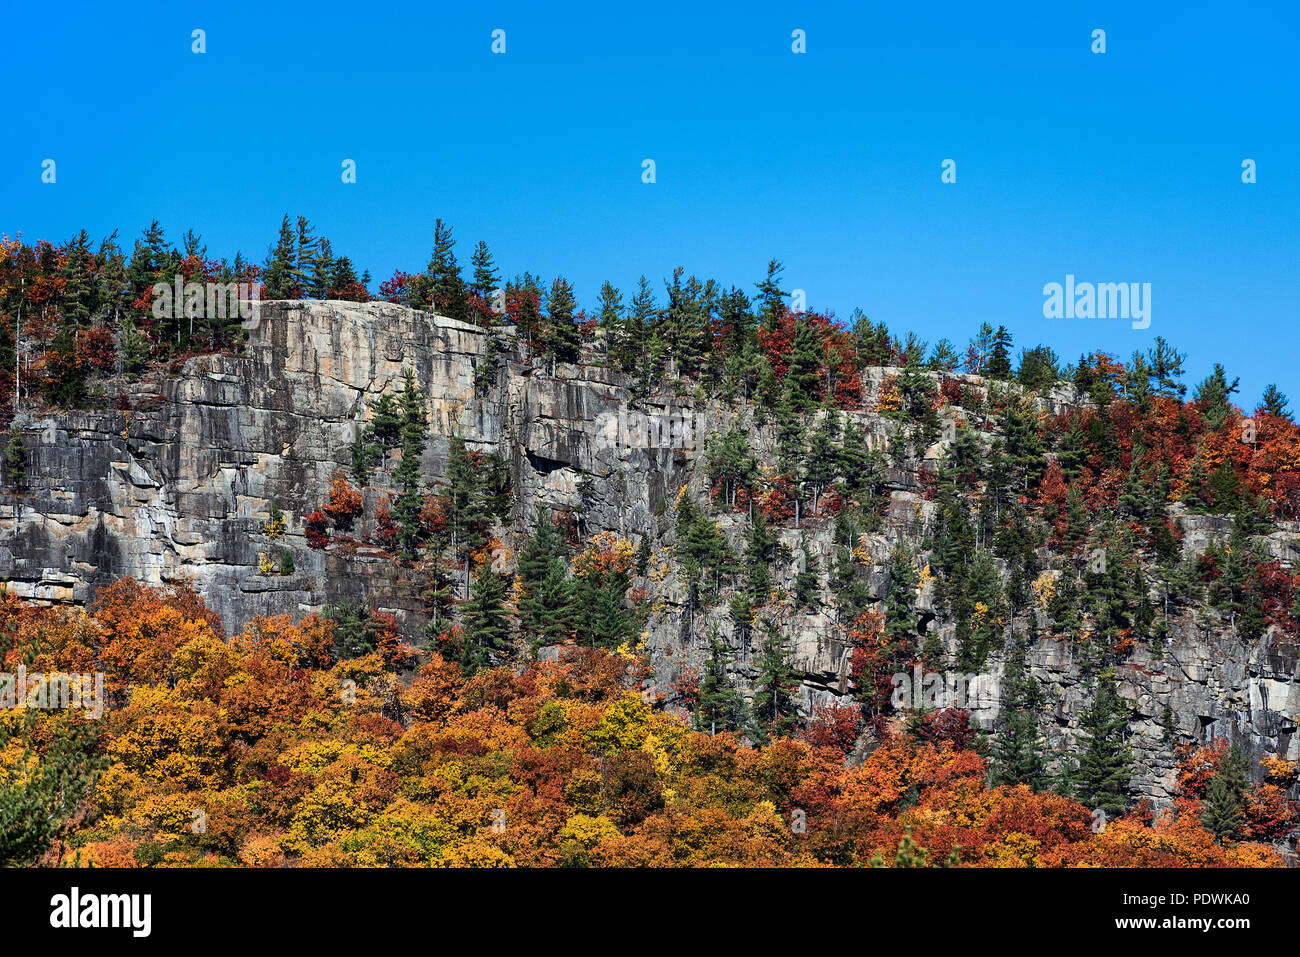 Mur de montagnes de granit et de feuillage de l'automne, Franconia Notch State Park, New Hampshire, USA. Banque D'Images